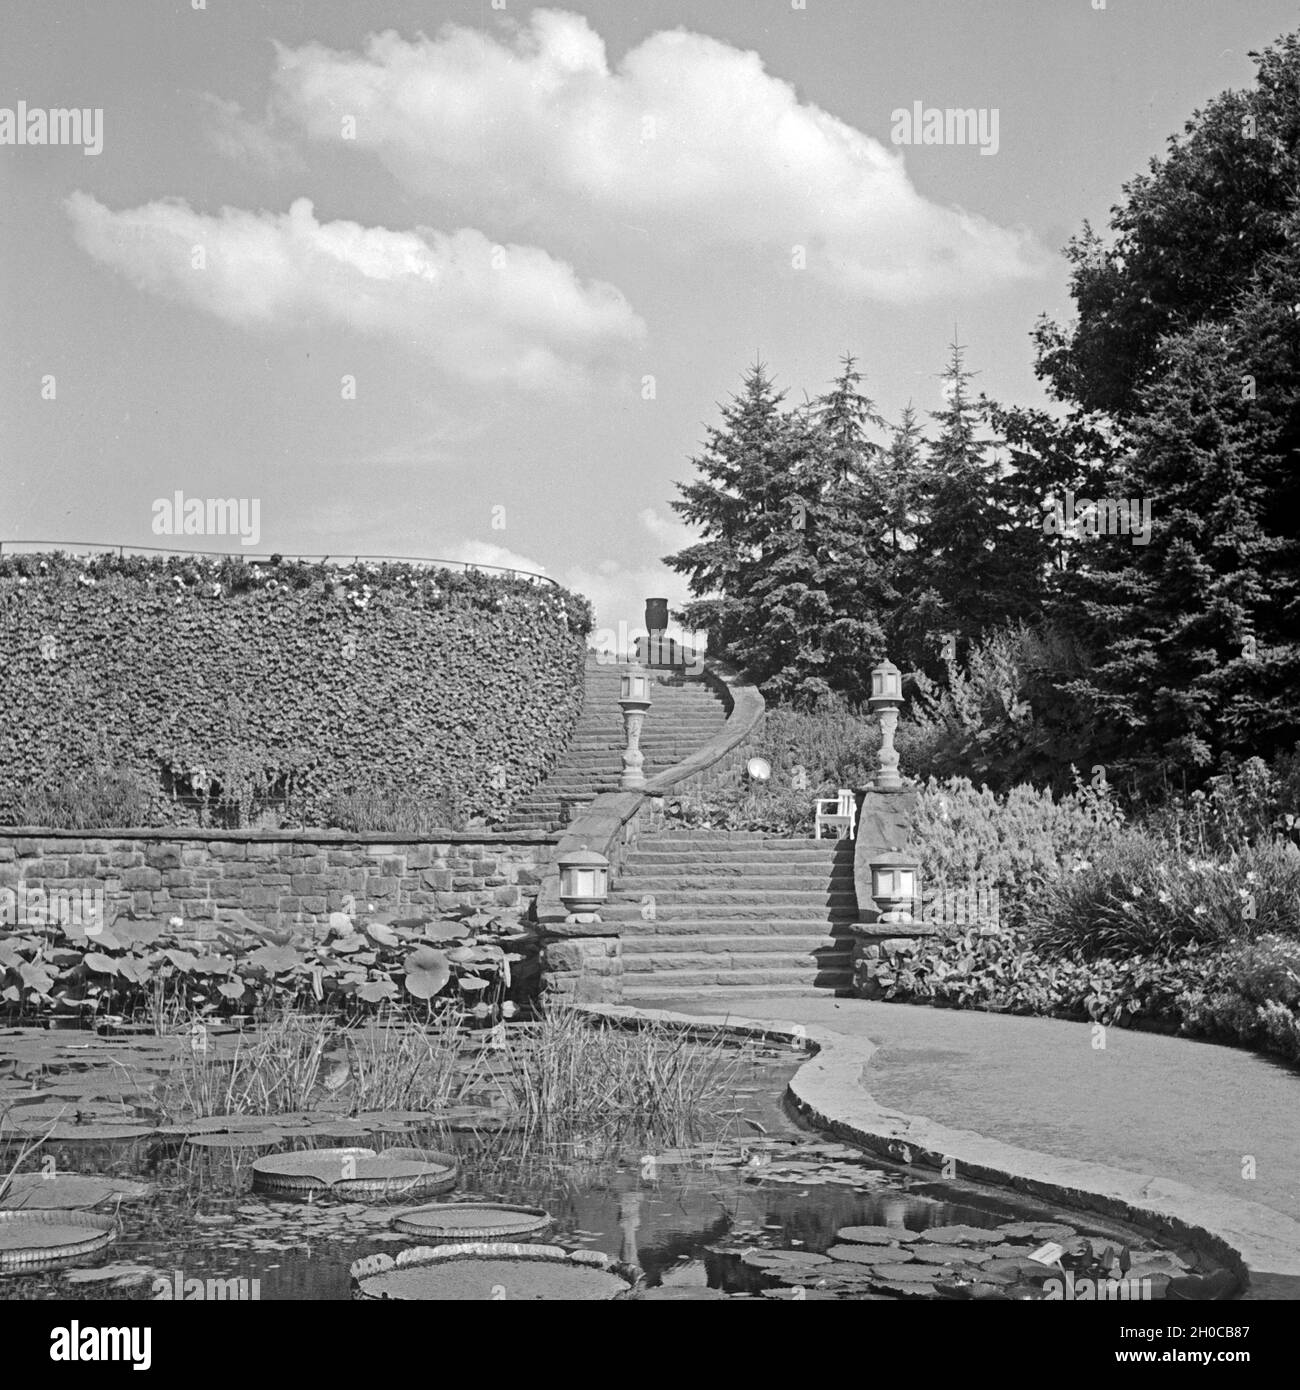 Idylle im Grugapark in Essen, Deutschland 1930er Jahre. Idyll at Grugapark gardens at Essen, Germany 1930s. Stock Photo